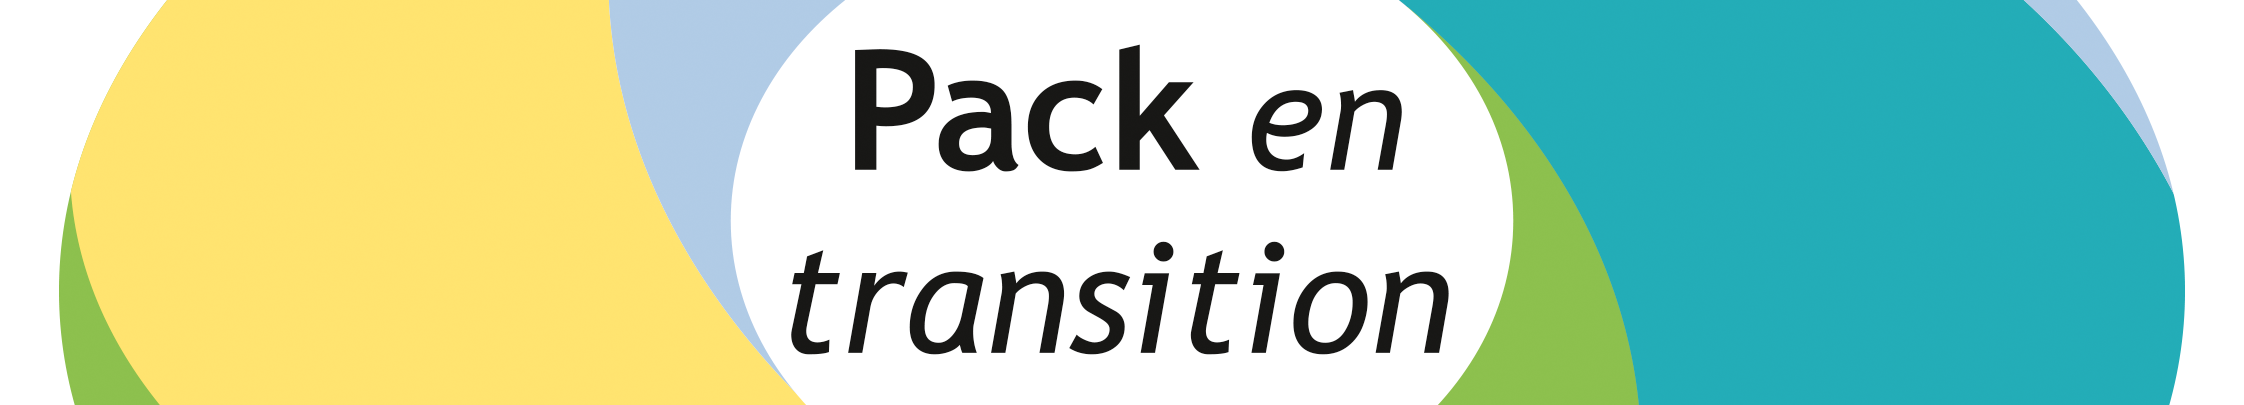 Pack en Transition